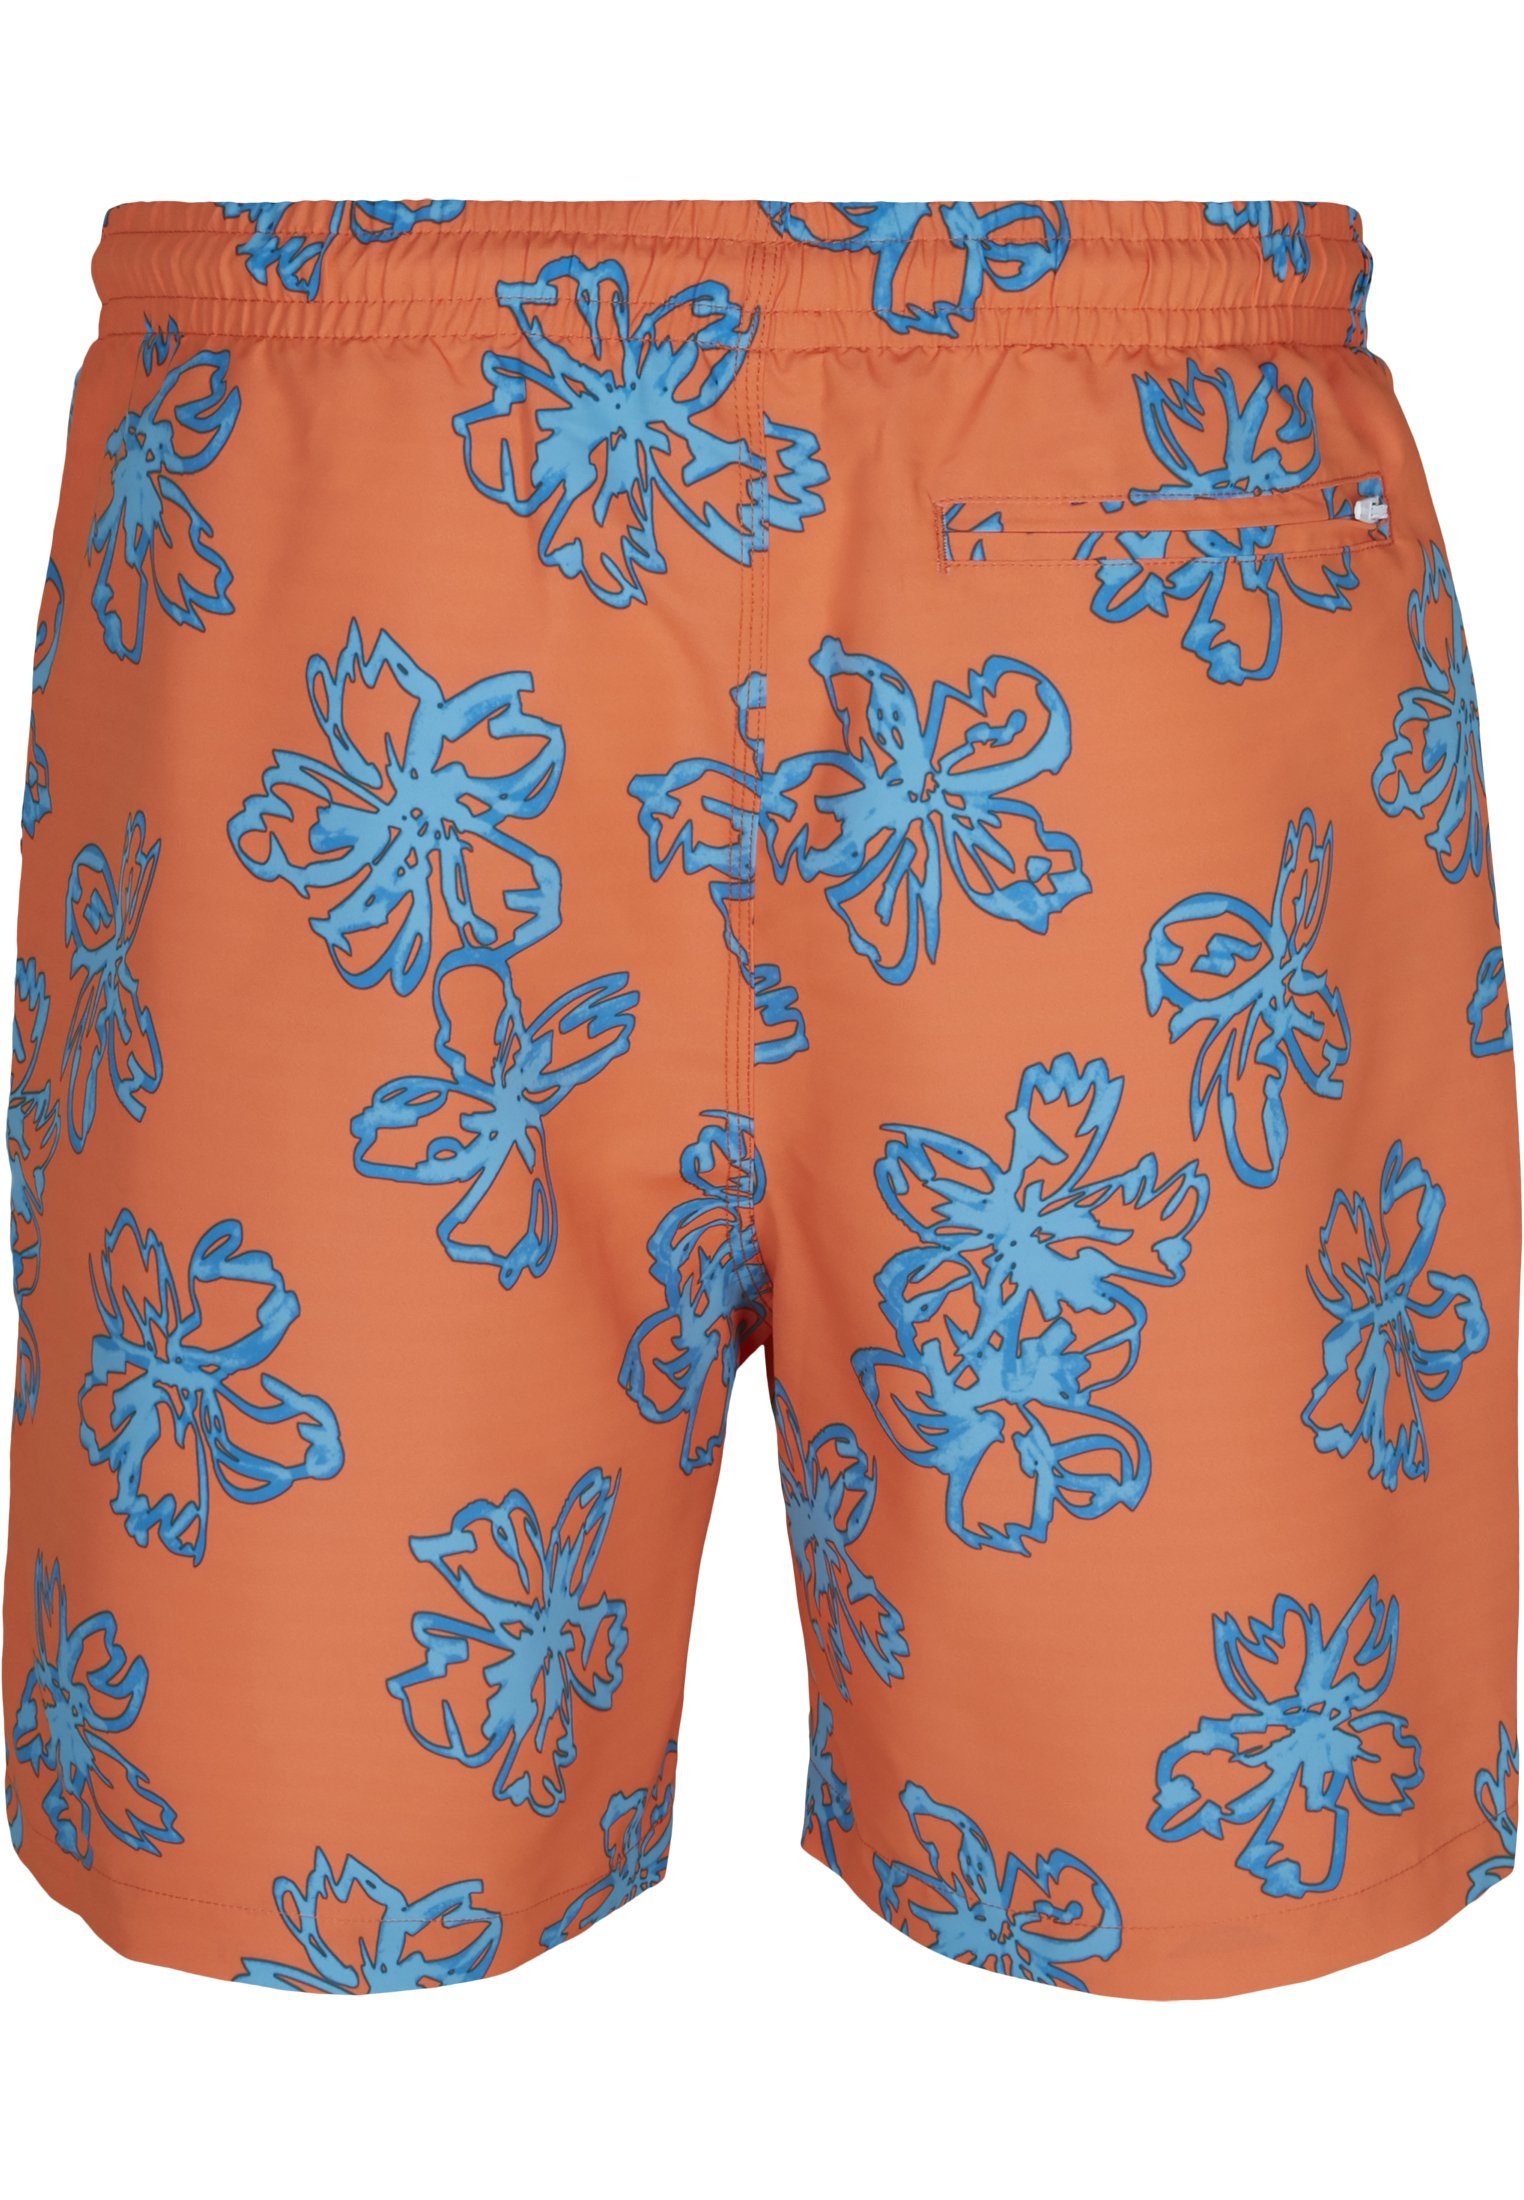 Badeshorts Floral Shorts Swim Herren orange CLASSICS URBAN